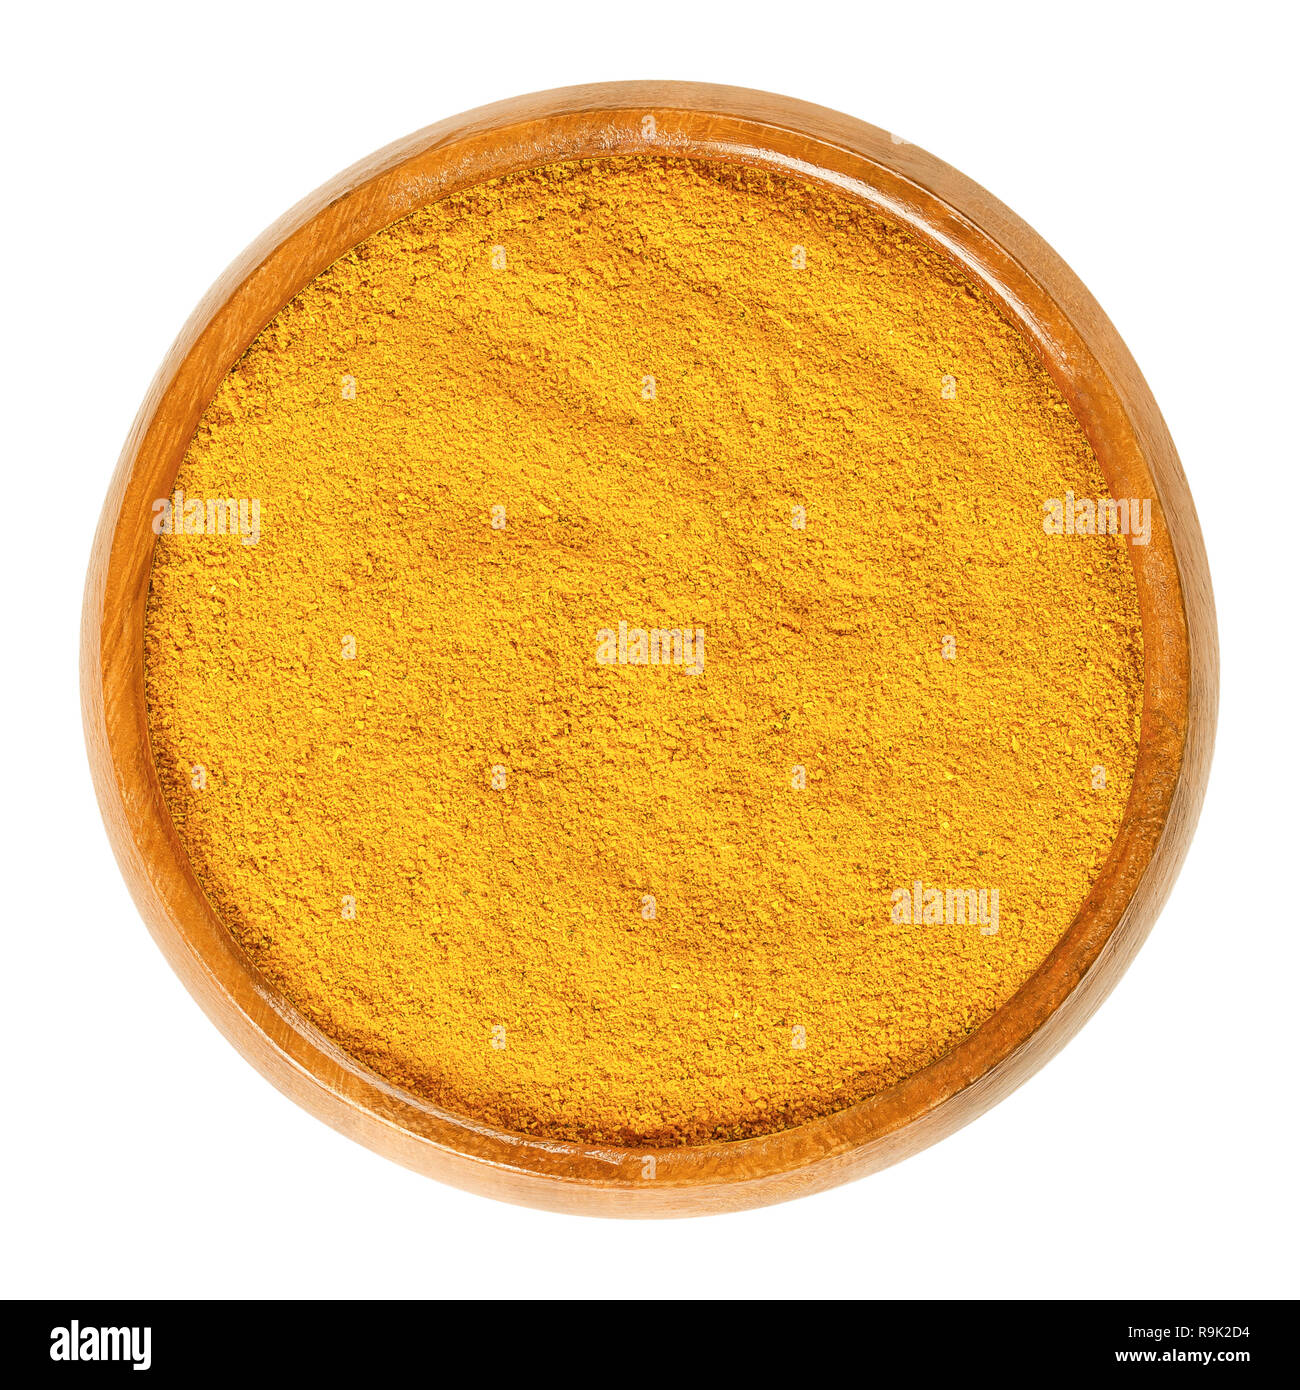 Curry Pulver in Houten. Orange Spice Mix aus verschiedenen Zutaten, die meisten Rezepte Koriander, Curcuma, Kurkuma, Fenugreek, und Chili. Stockfoto